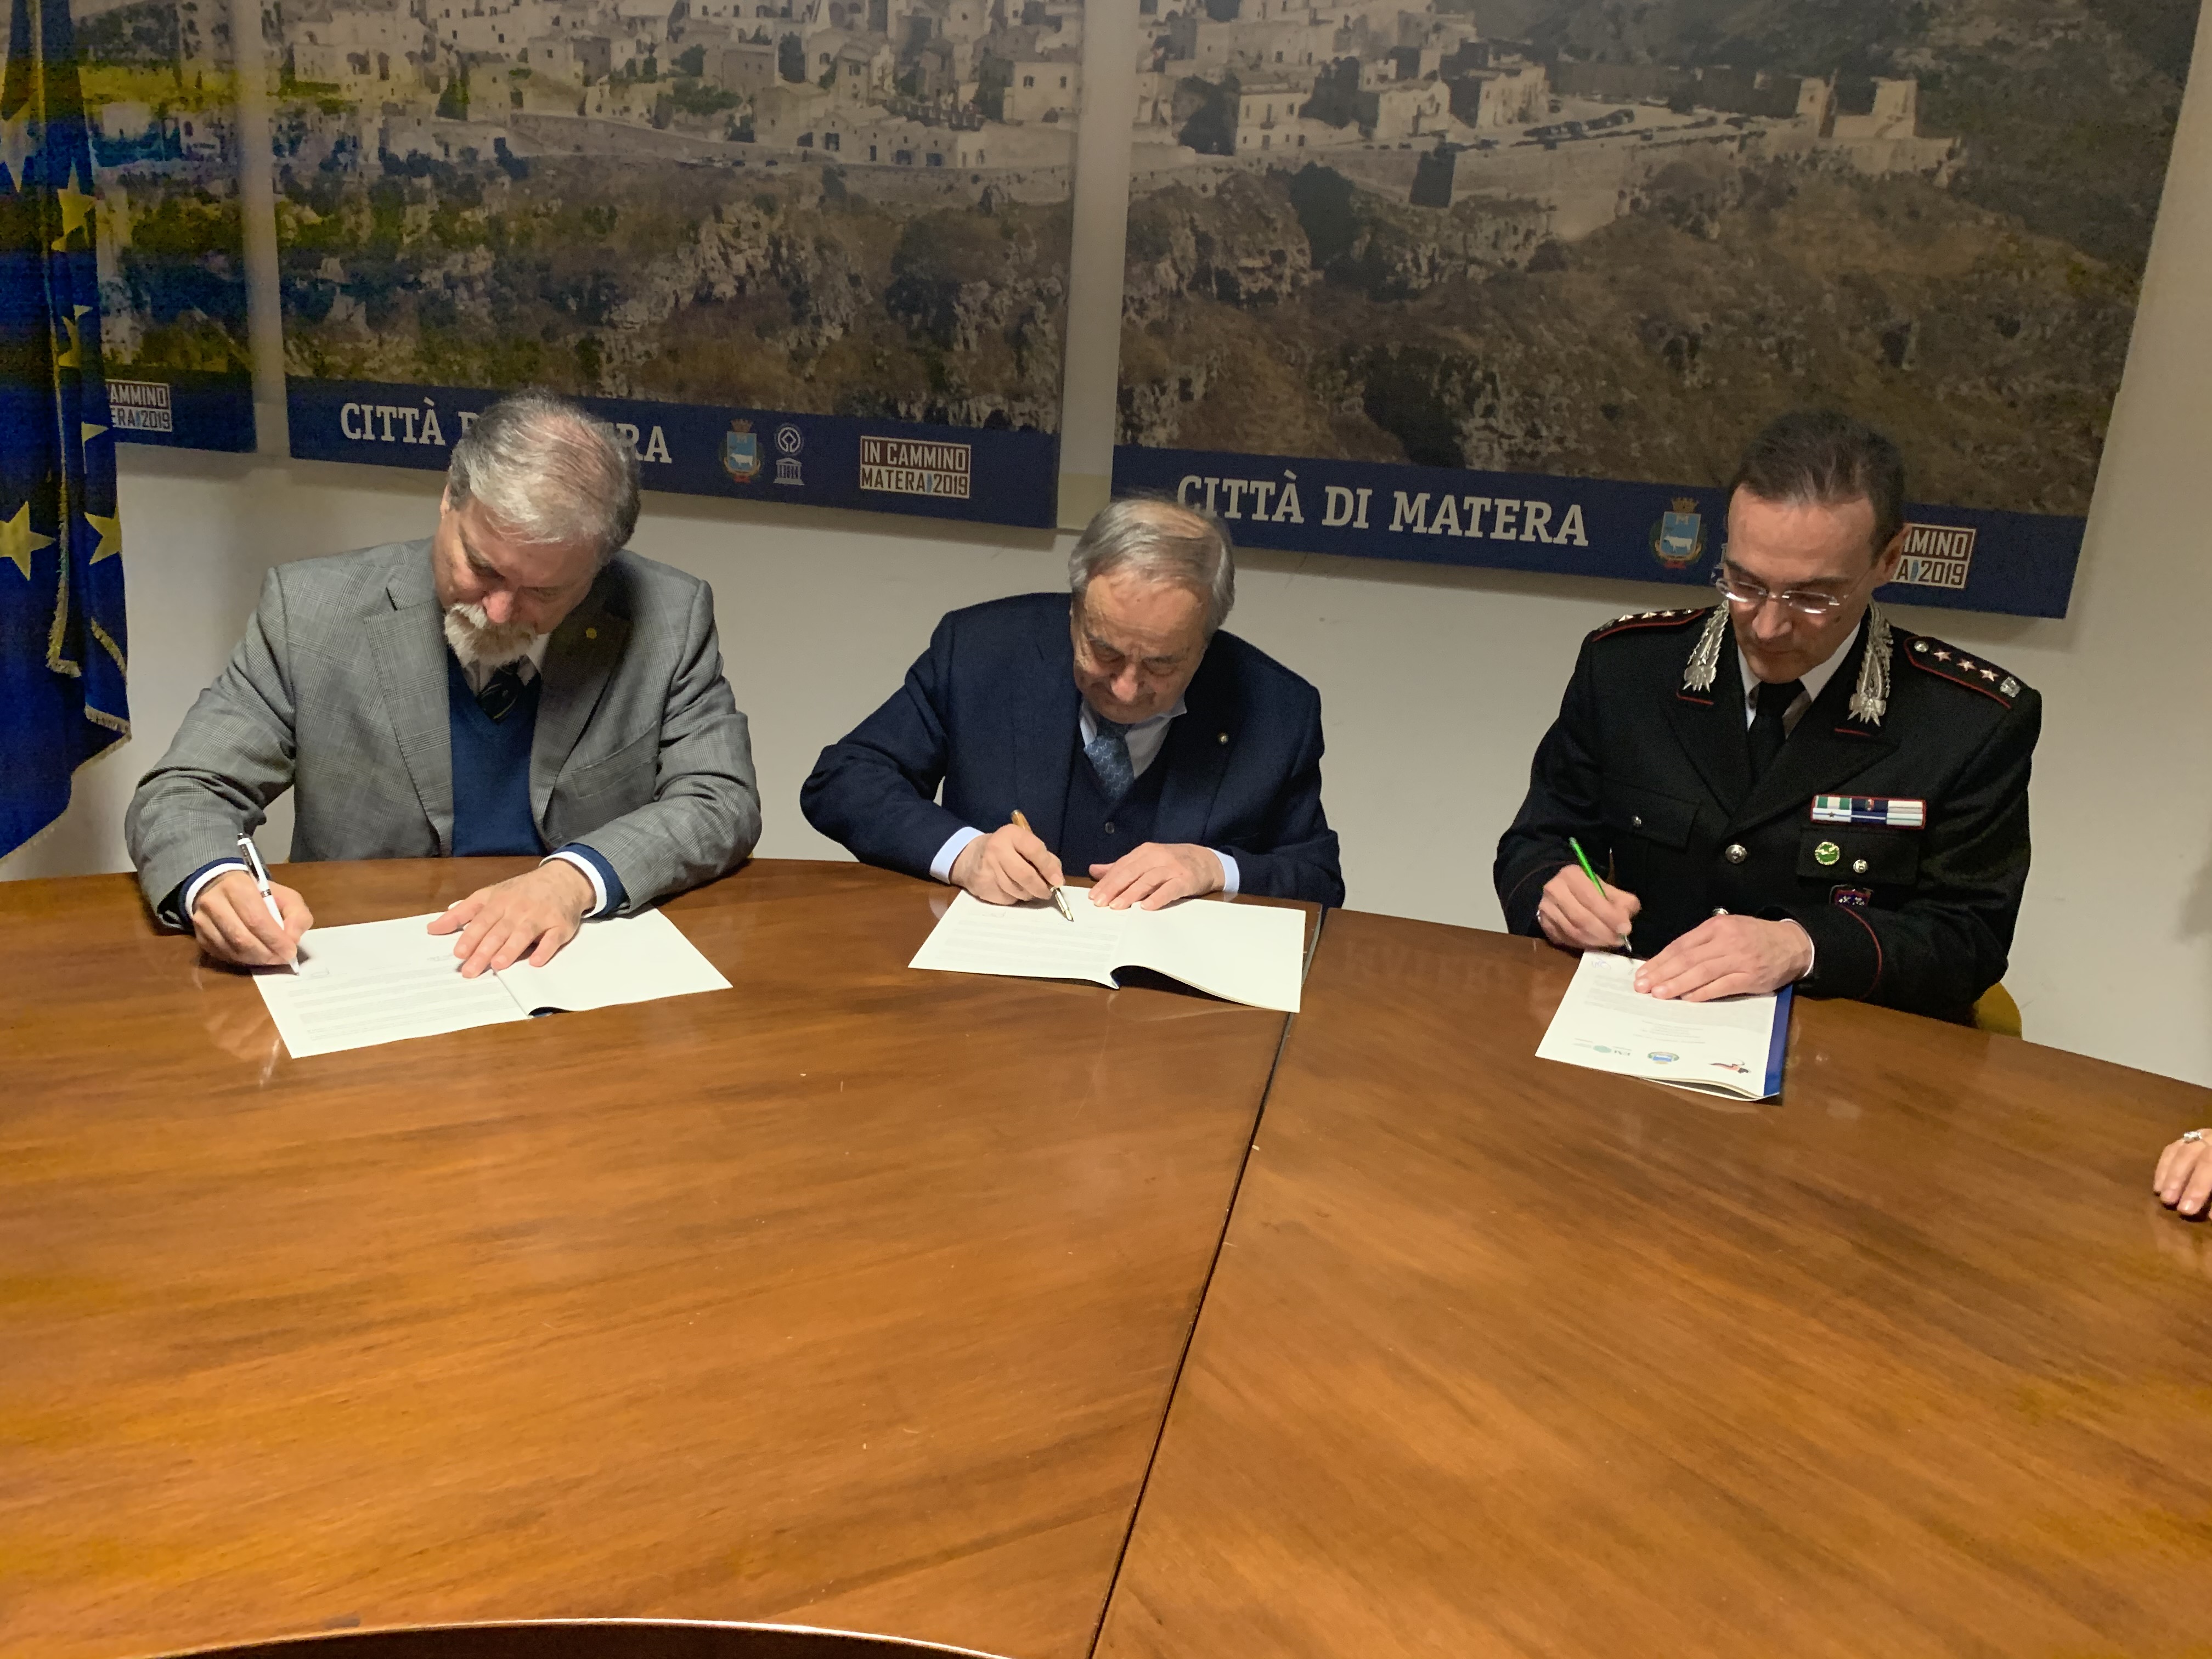 Apincitta’, siglato protocollo d’intesa tra l’Arma dei Carabinieri, il Comune di Matera e la Federazione Apicoltori Italiani